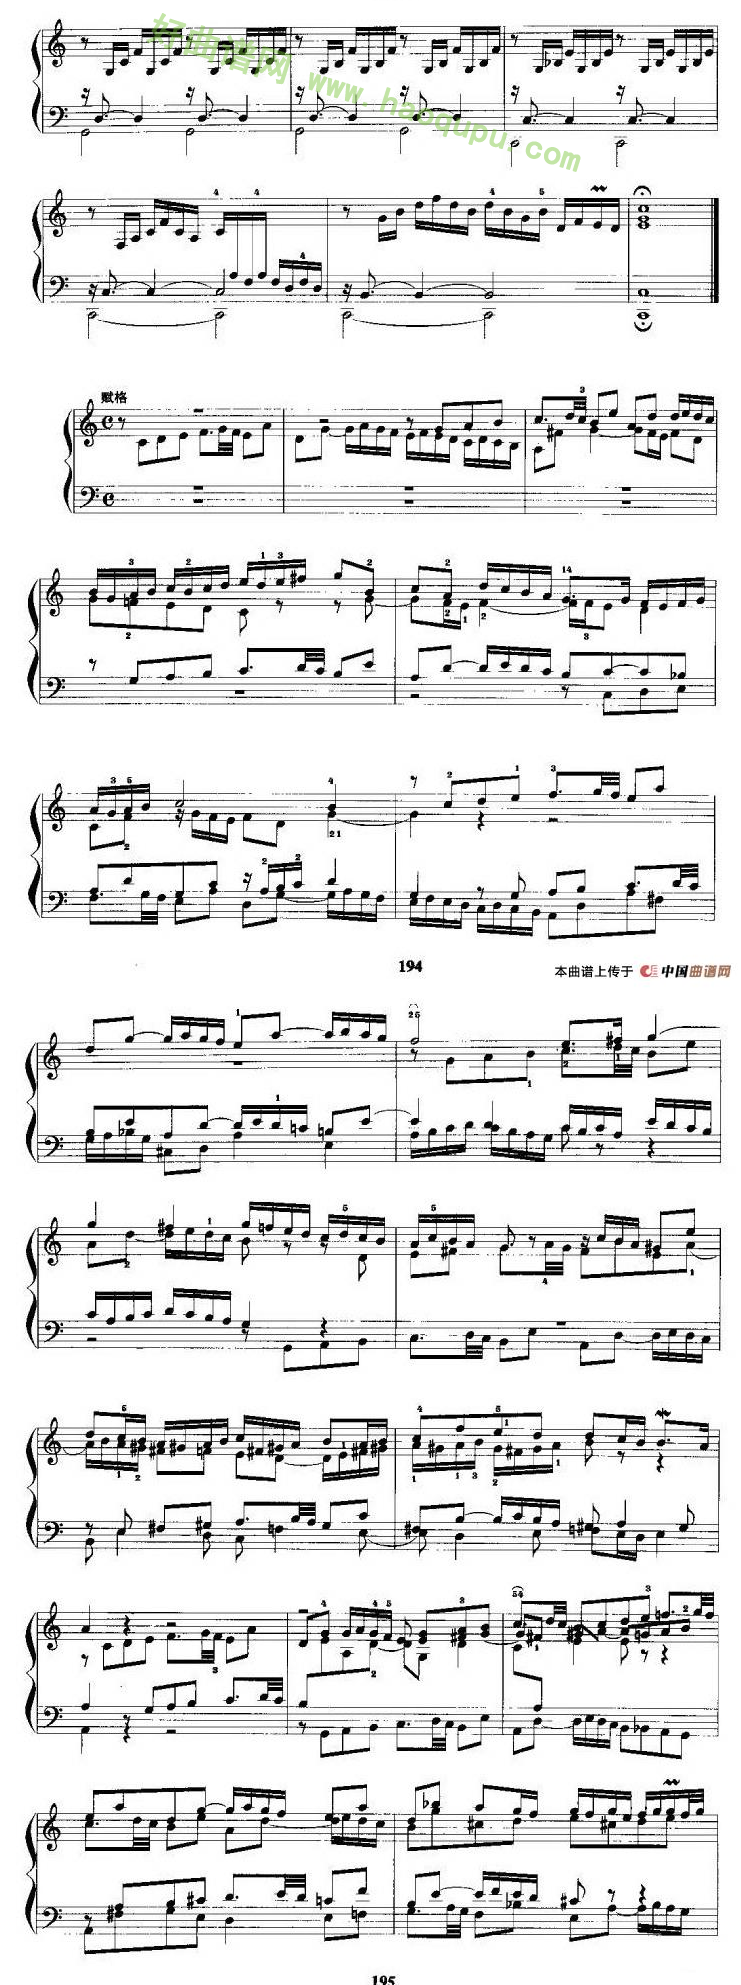 《c小调前奏曲与赋格》 手风琴曲谱第2张